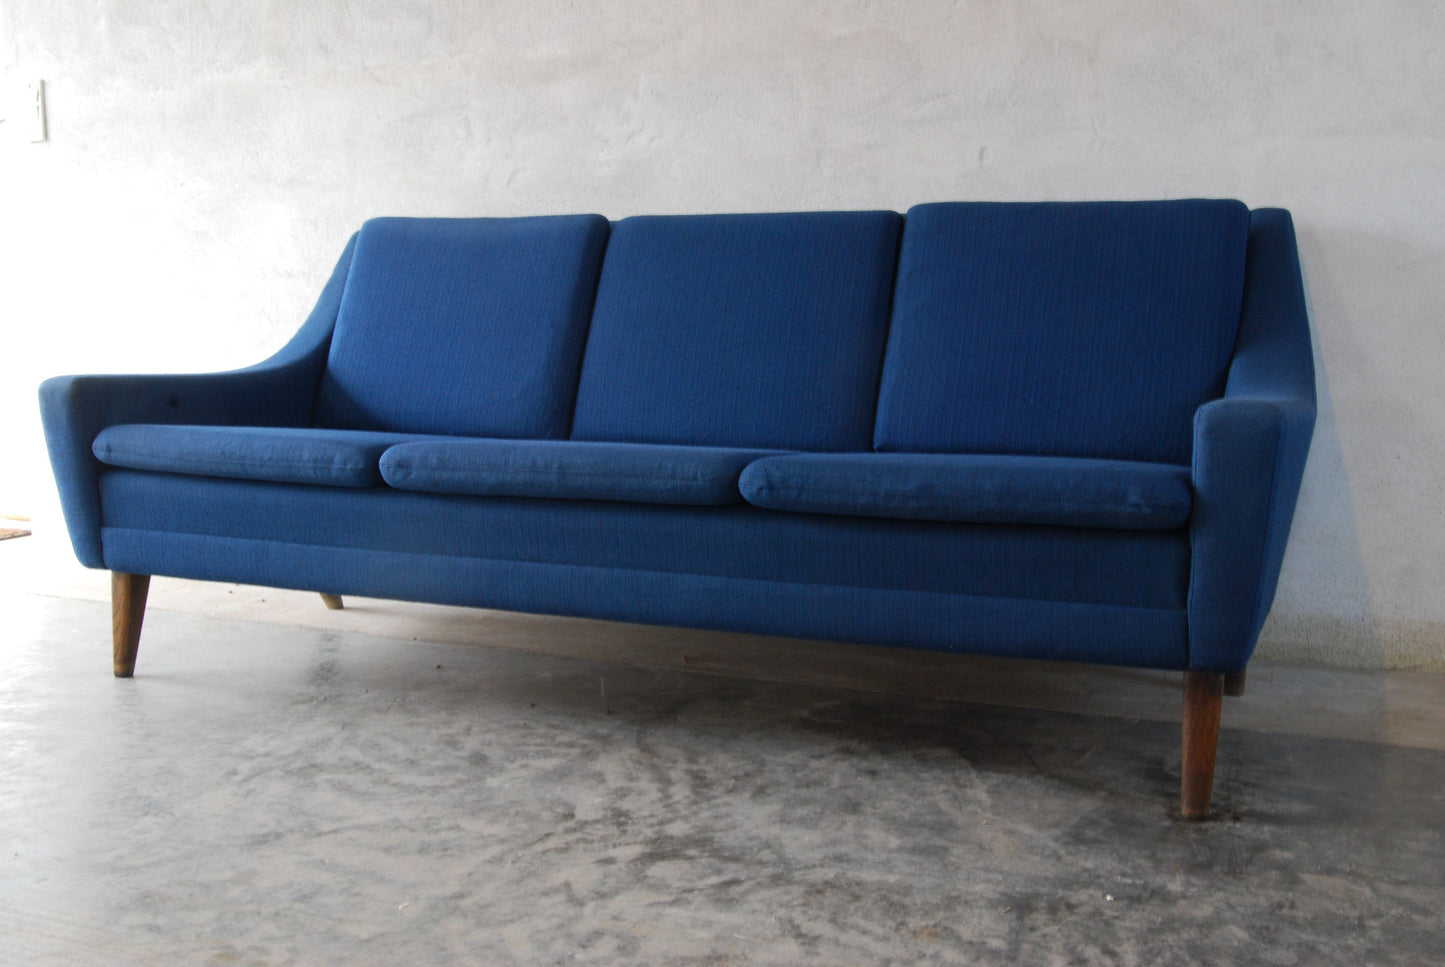 Three seat sofa by DUX no. 1